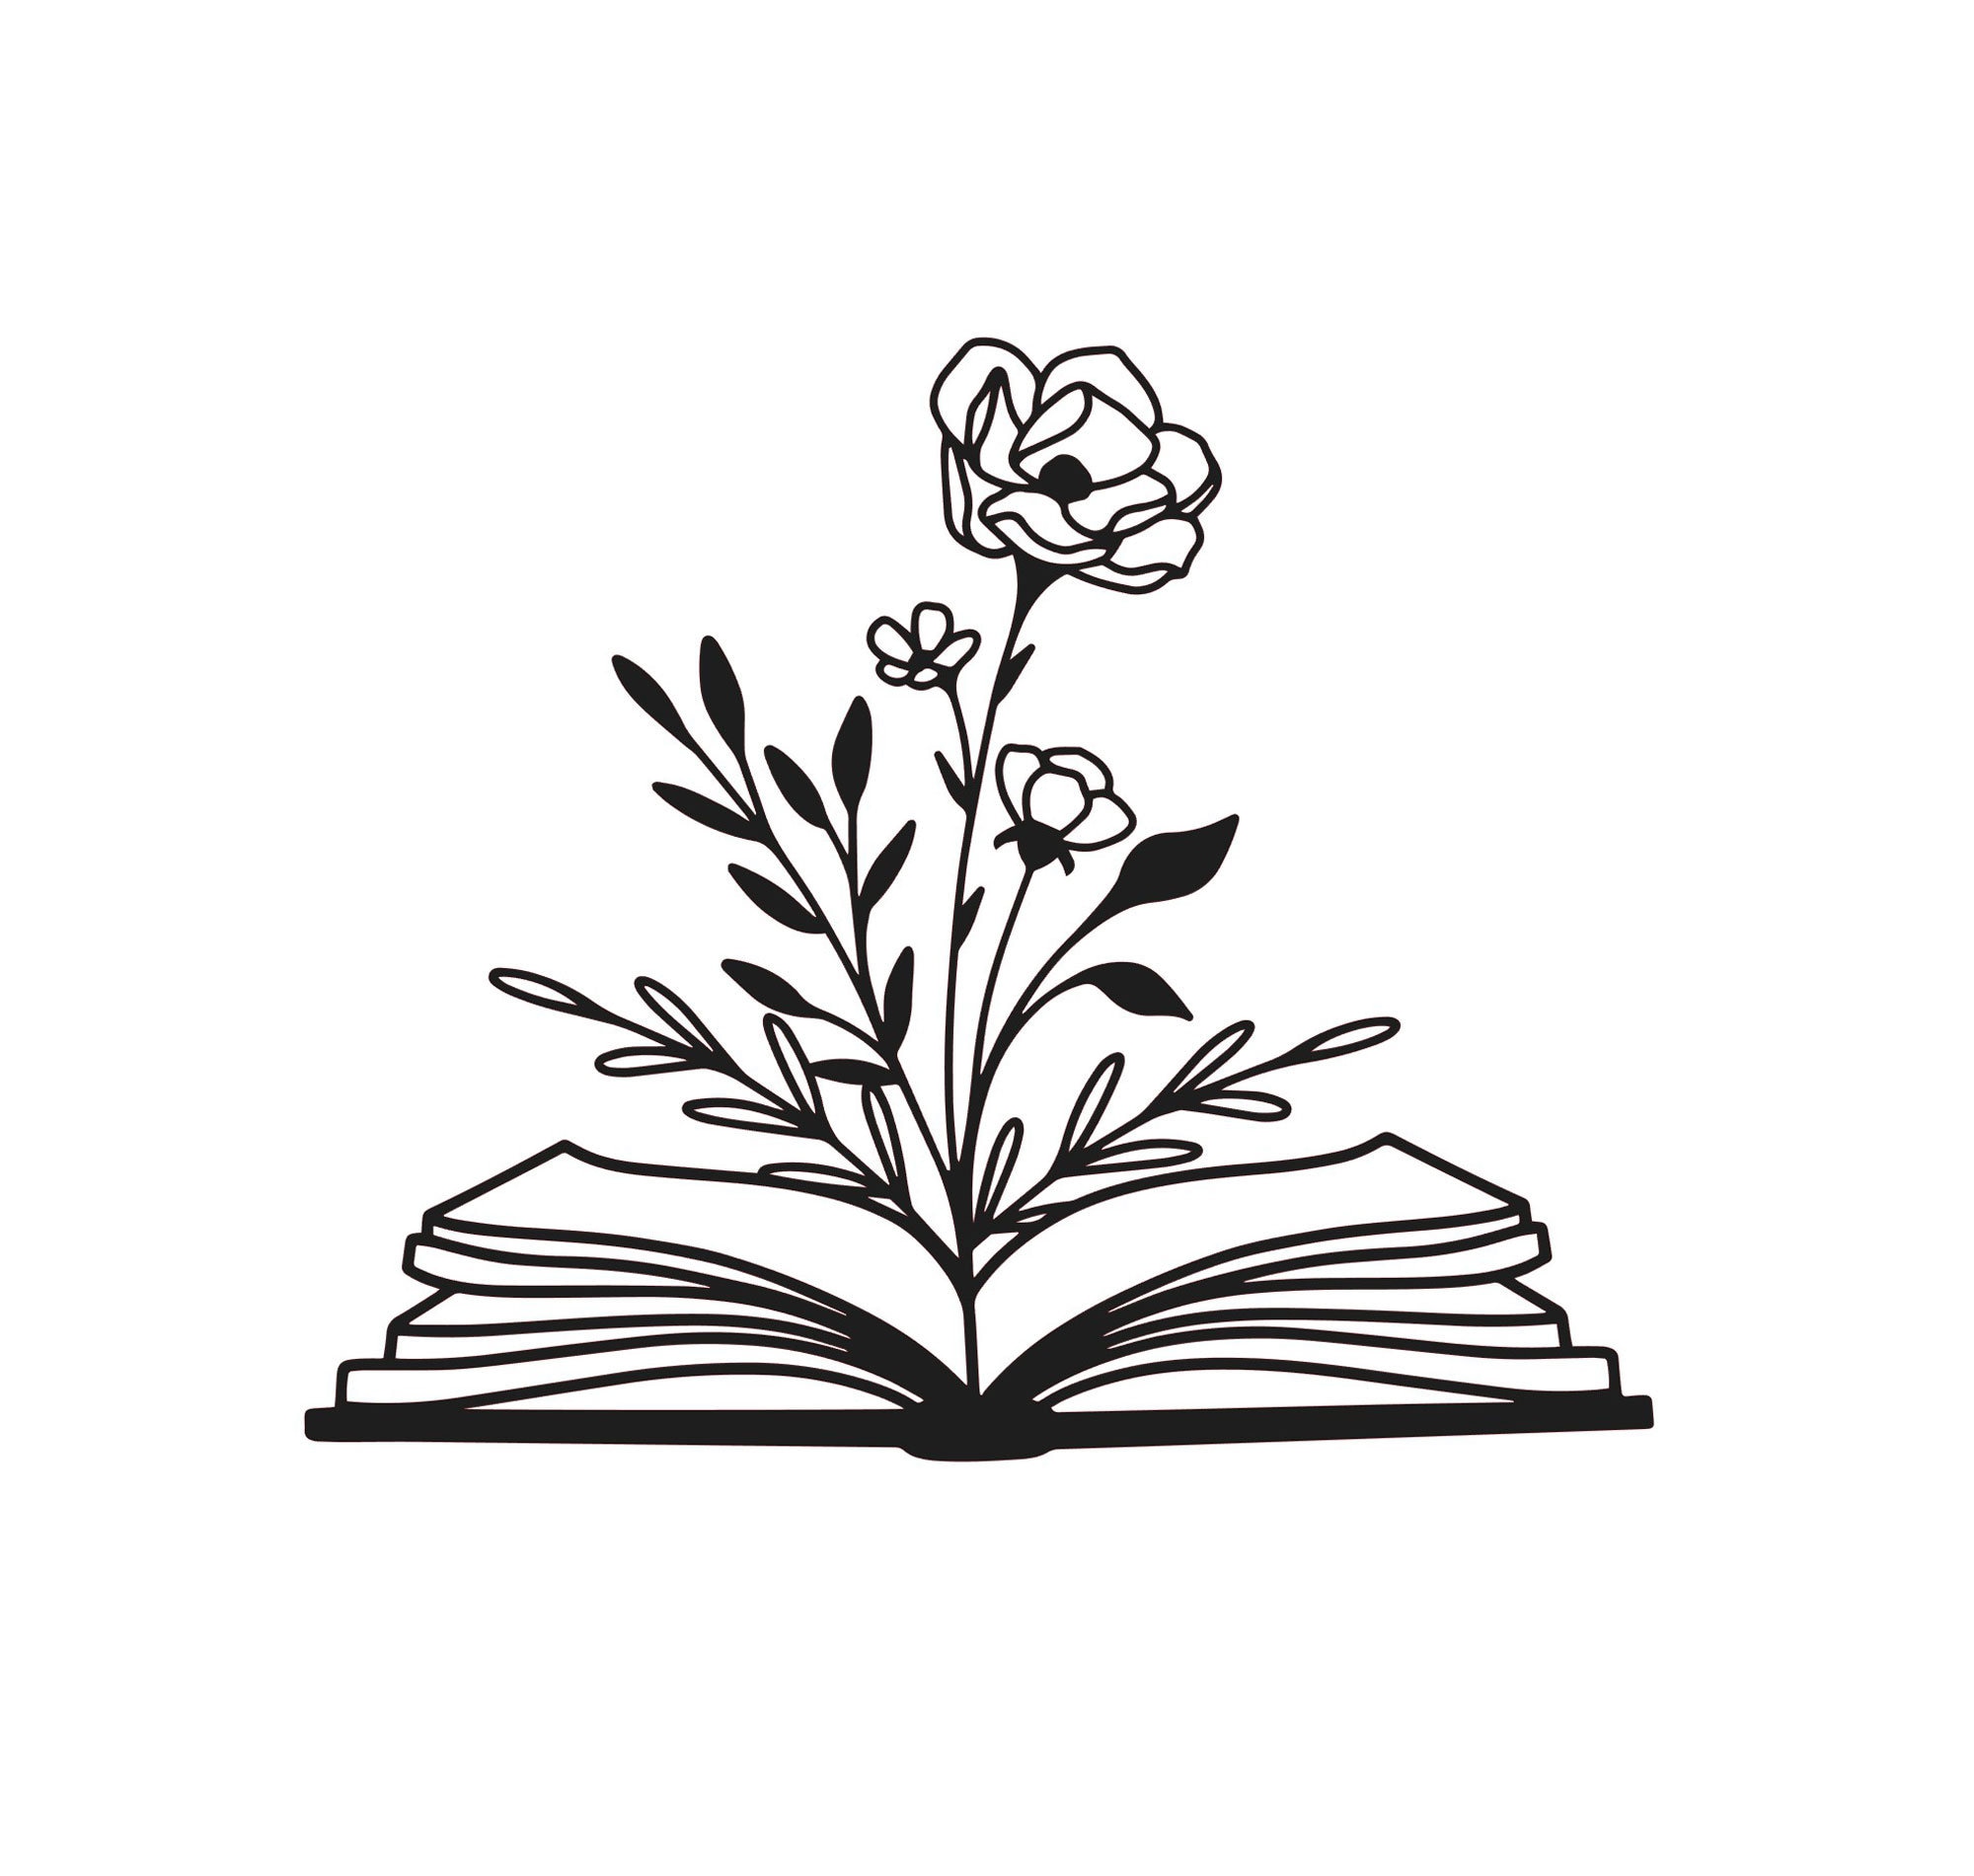 Top 10 Essential Books For Florists - Floranext - Florist Websites